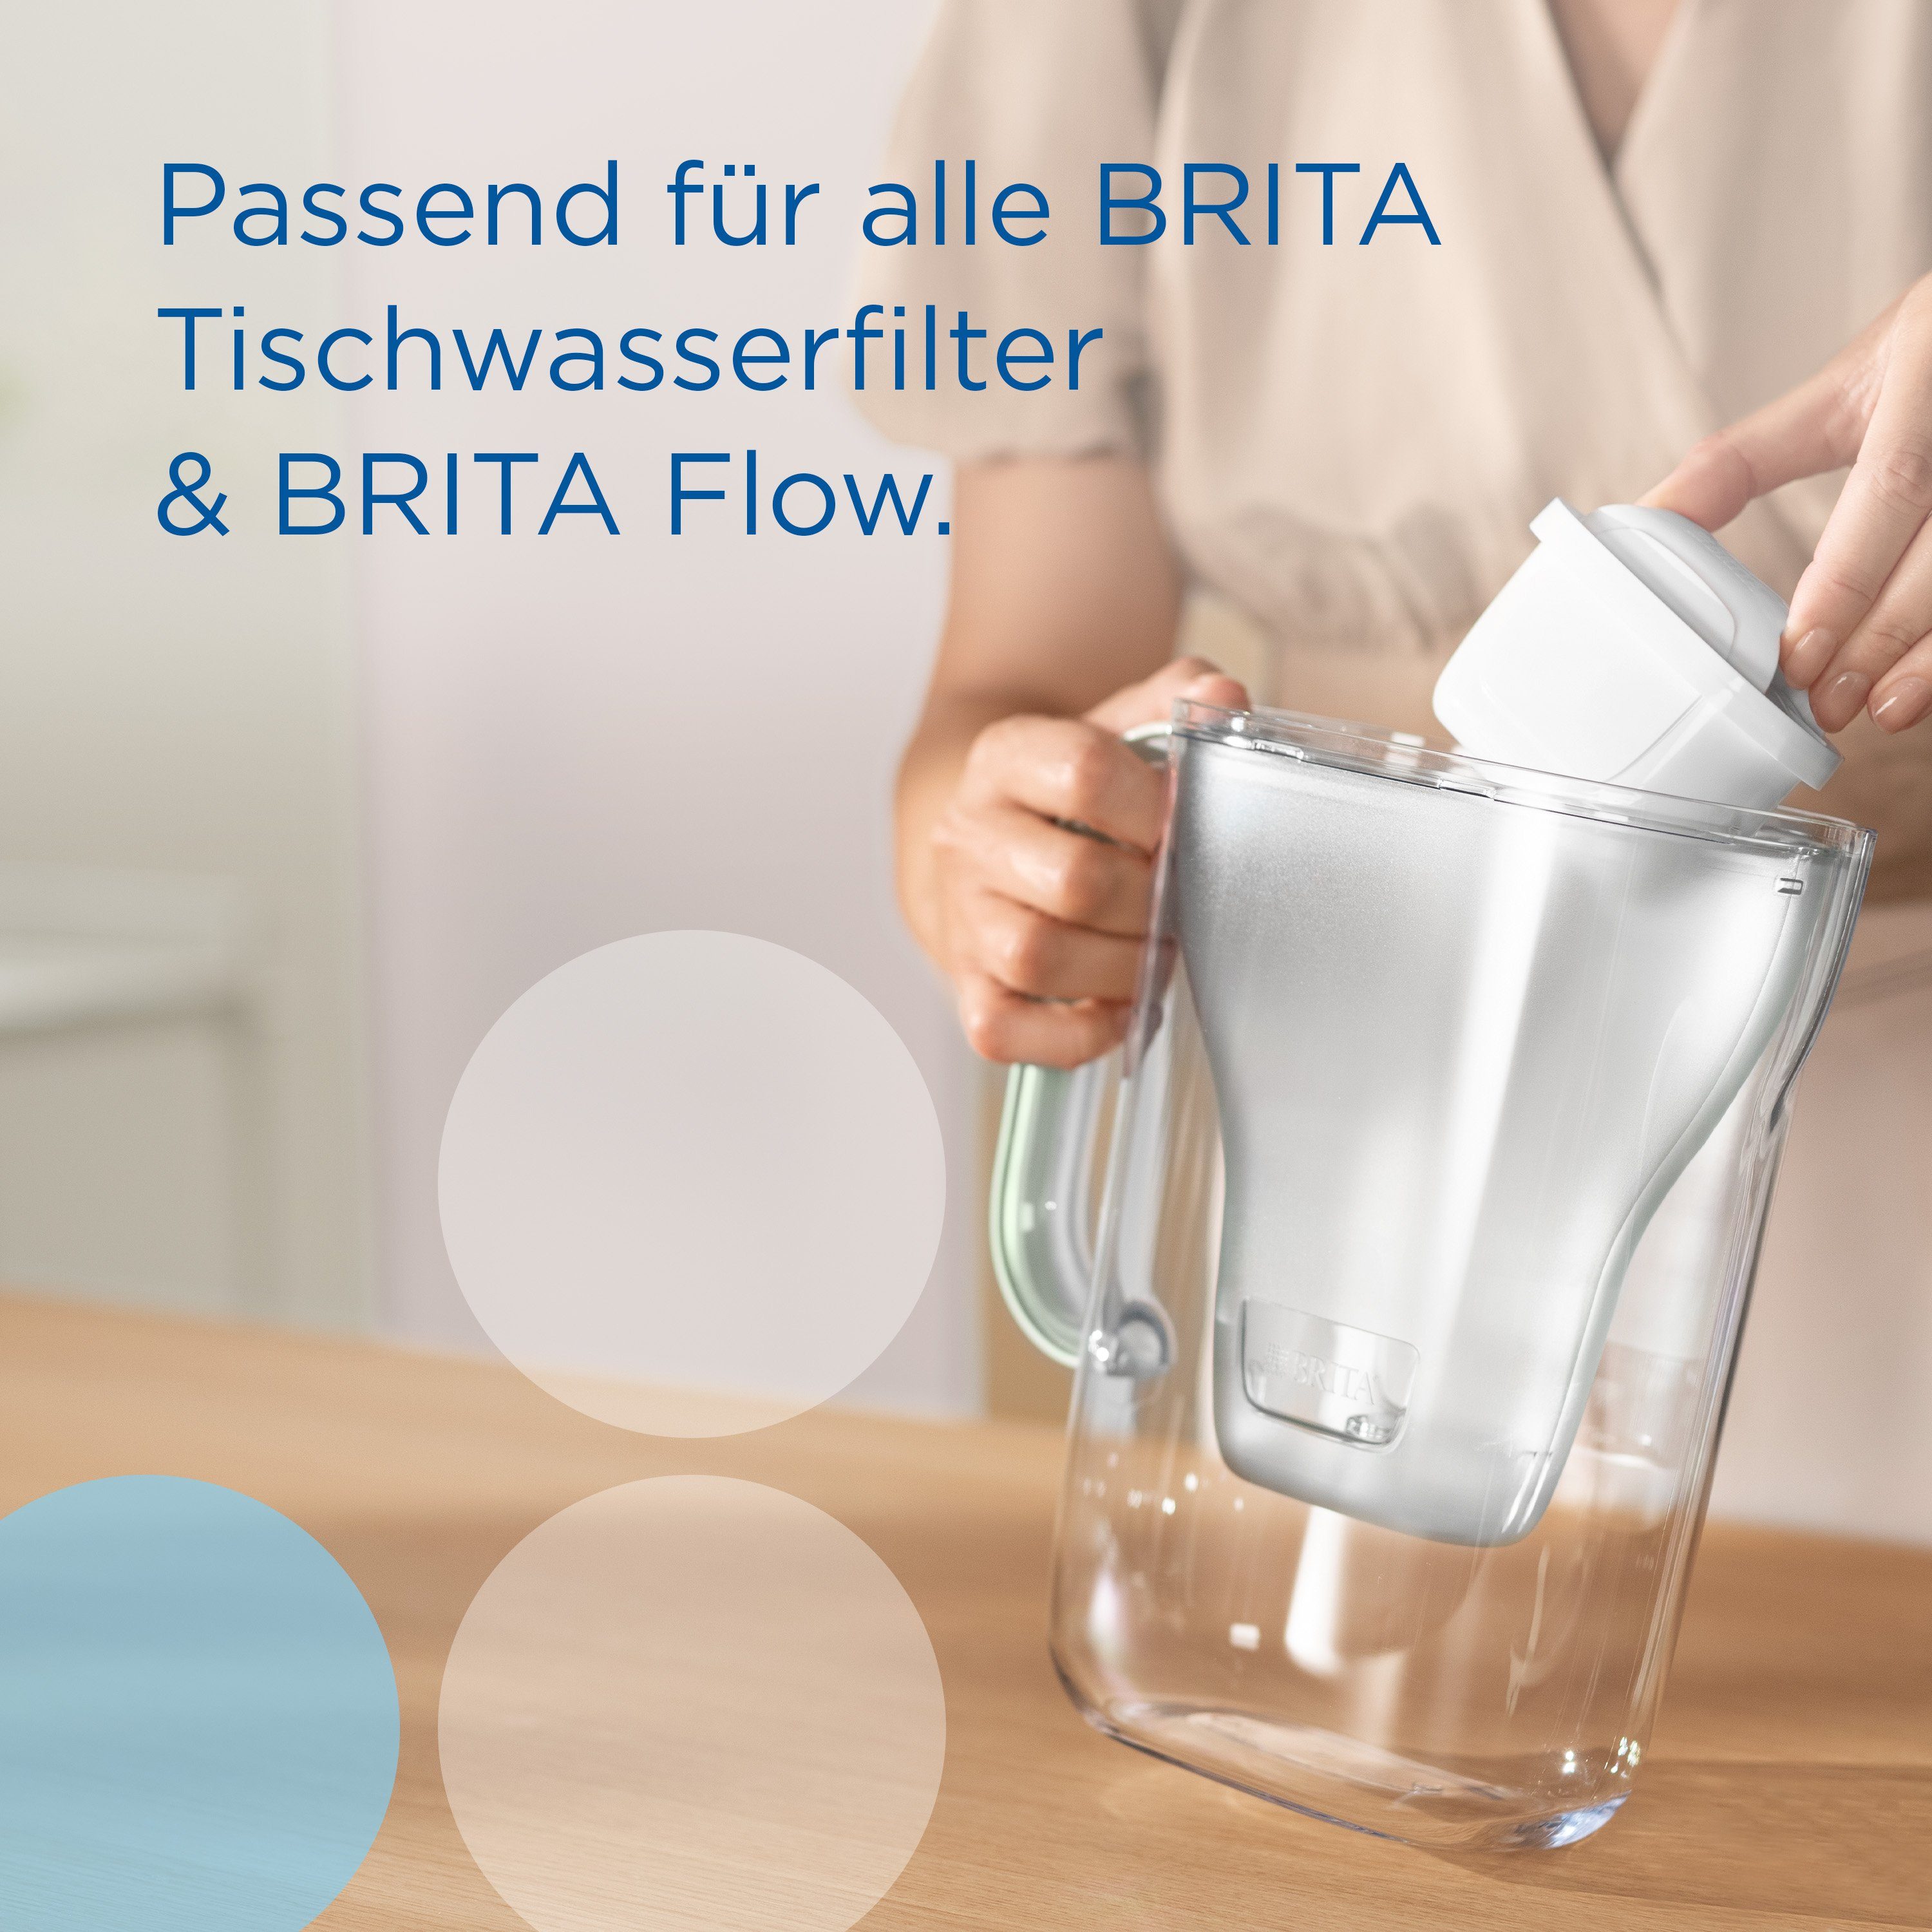 BRITA Chlor, All-in-1, Leitungswasser Kalk, PRO Wasserfilter Kupfer reduziert im & Blei MAXTRA